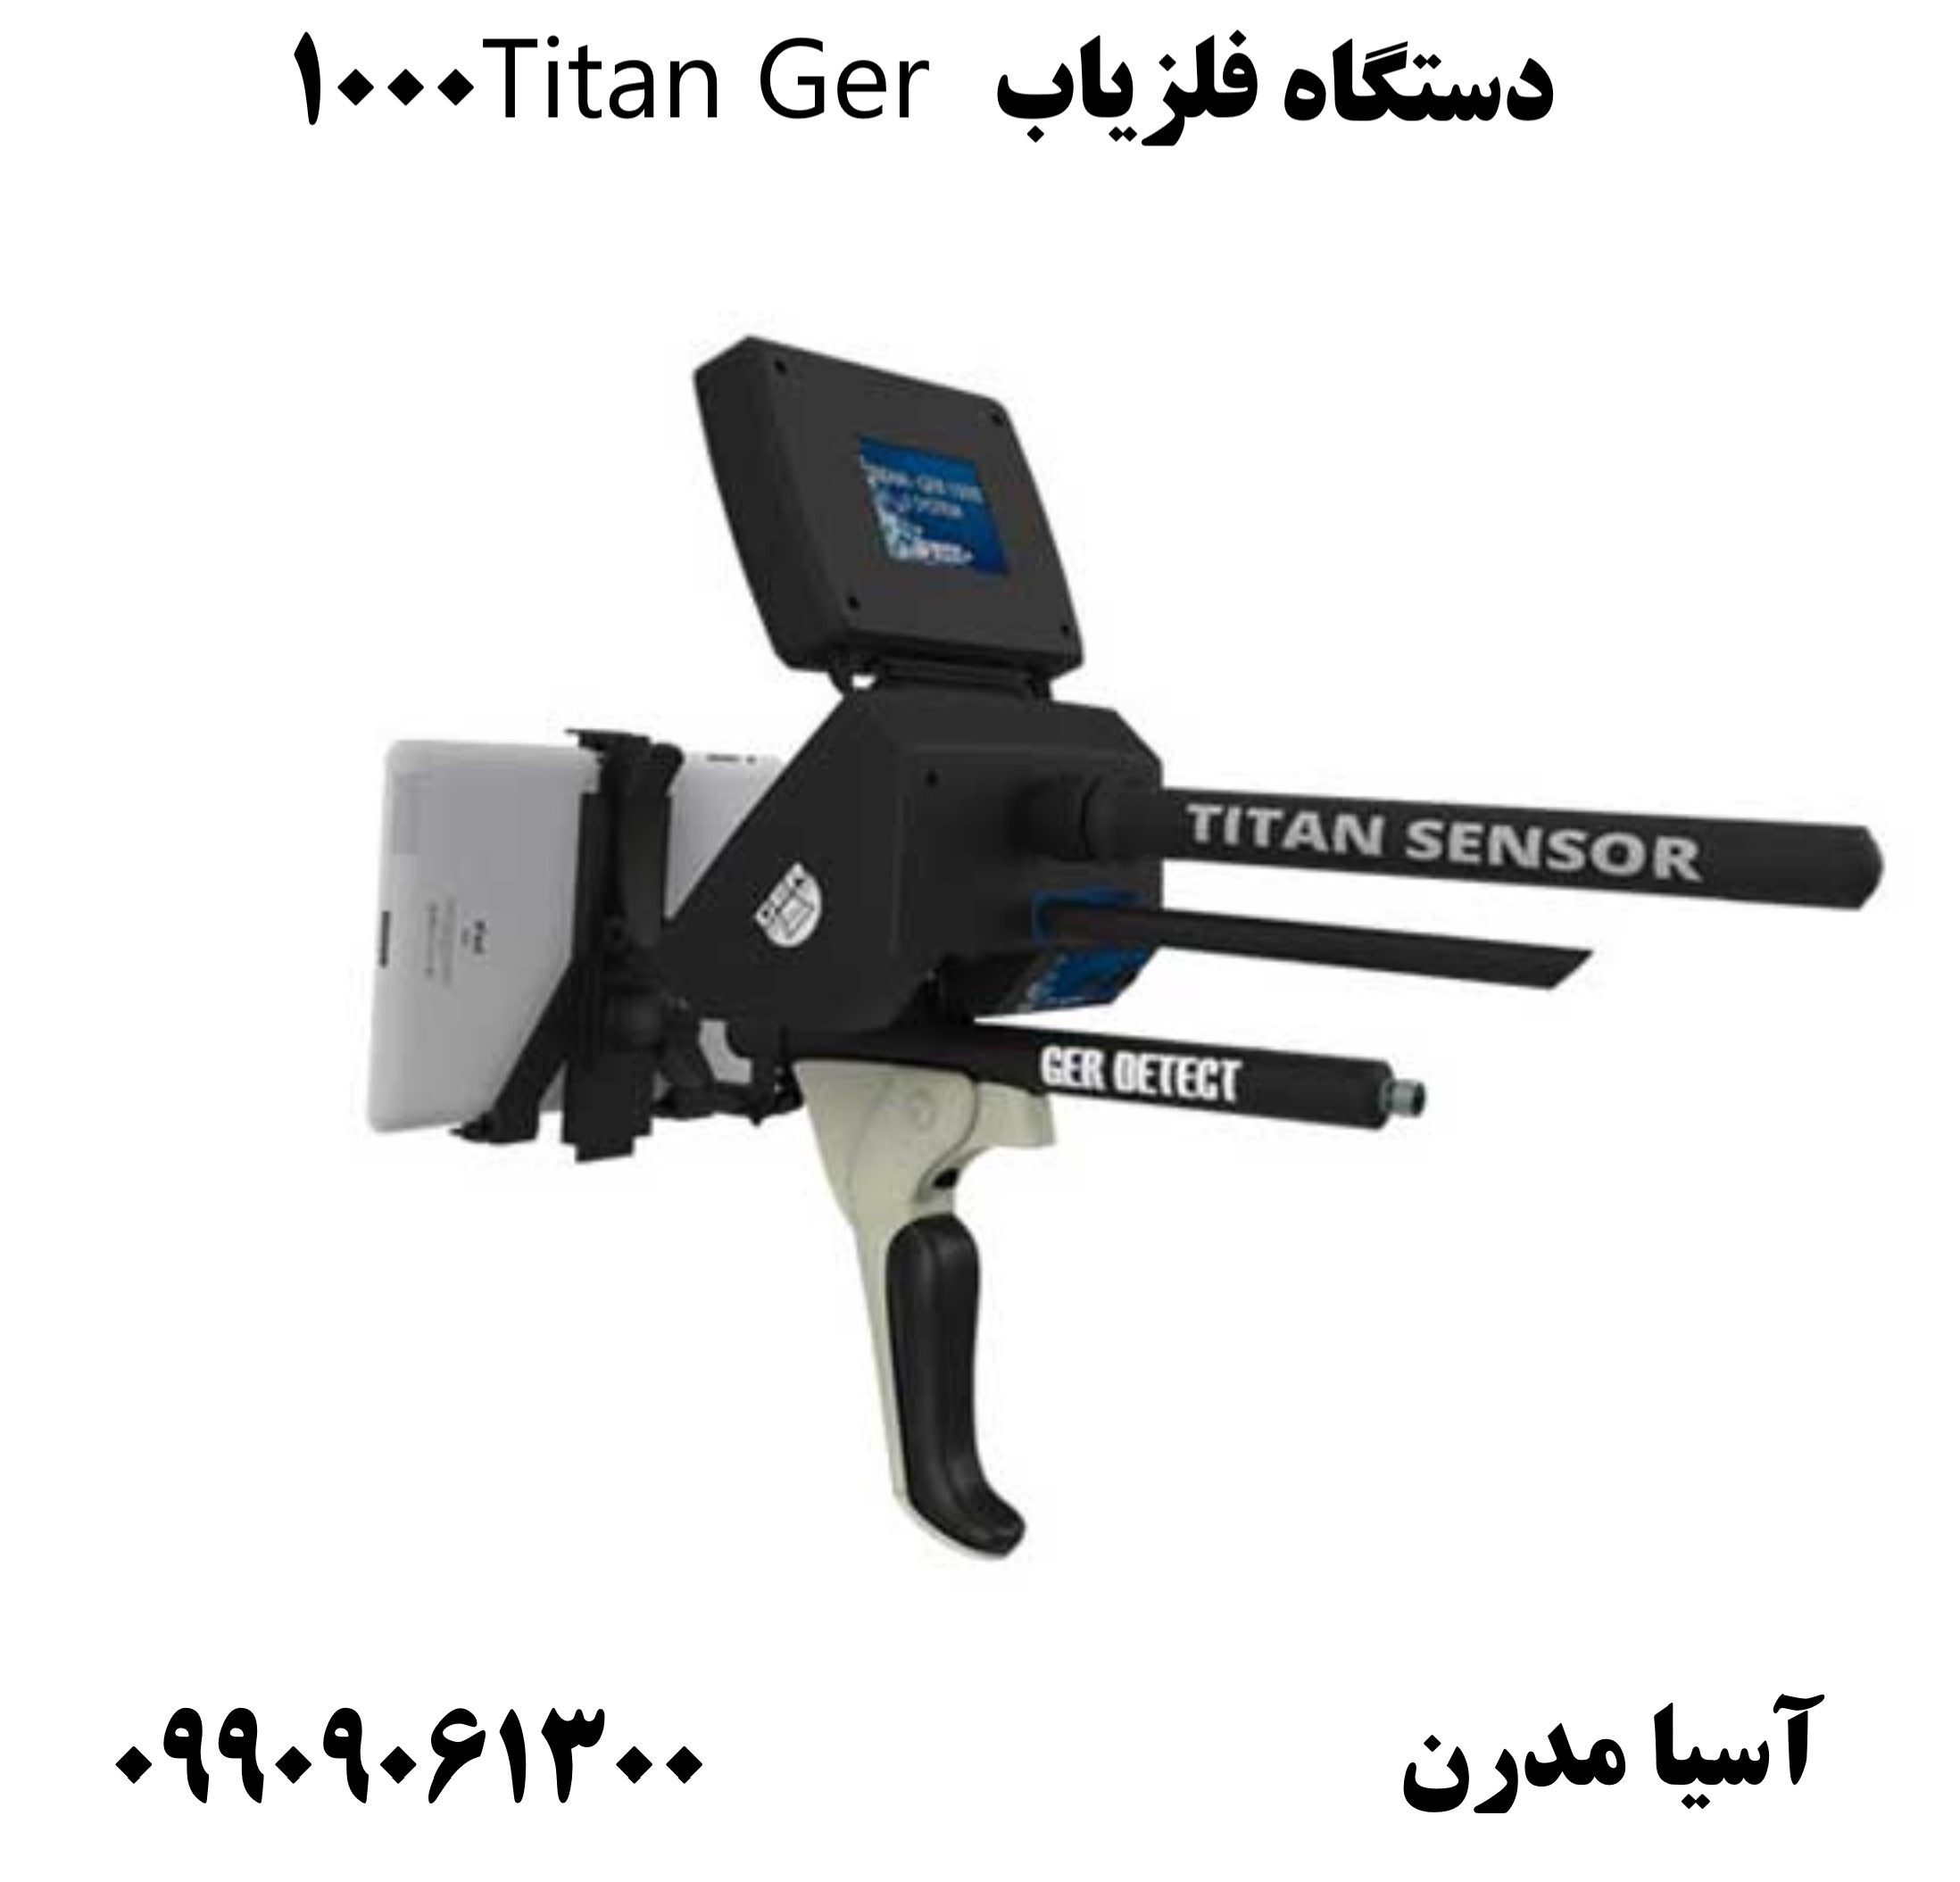 دستگاه فلزیاب Titan Ger 1000 09909061300